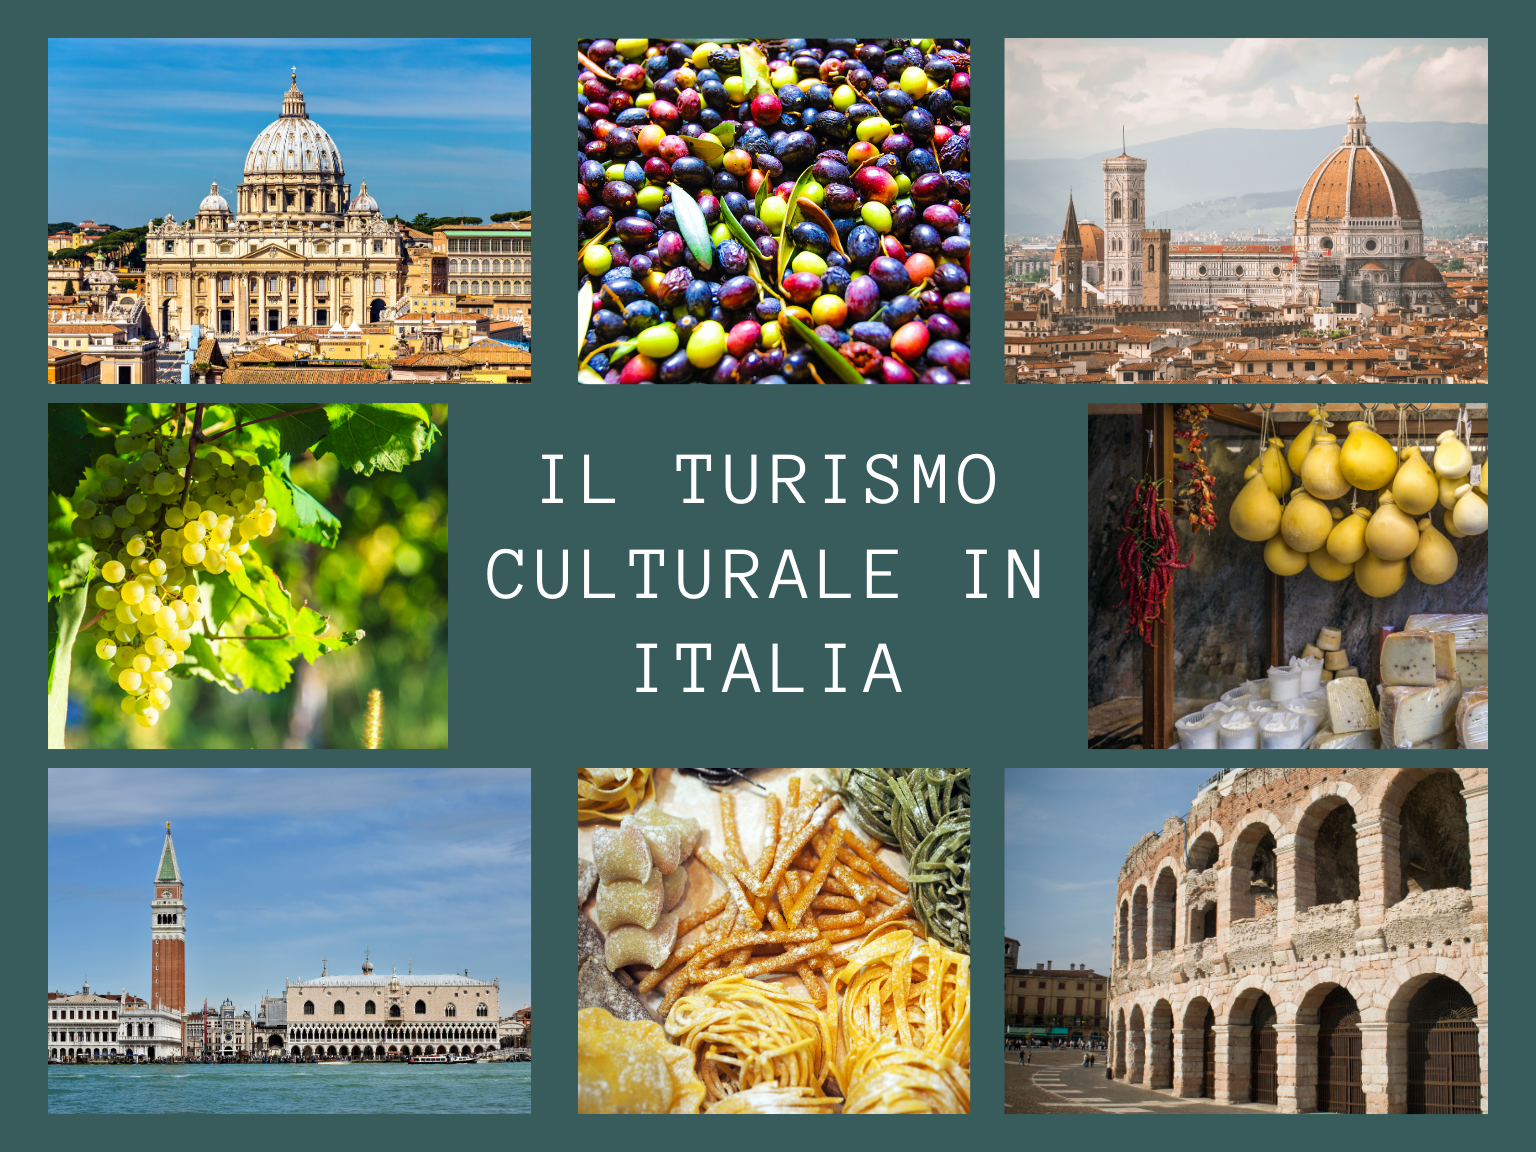 Turismo culturale in Italia attira 142 milioni di presenze. Stranieri e italiani esplorano l'arte, l'enogastronomia e la natura